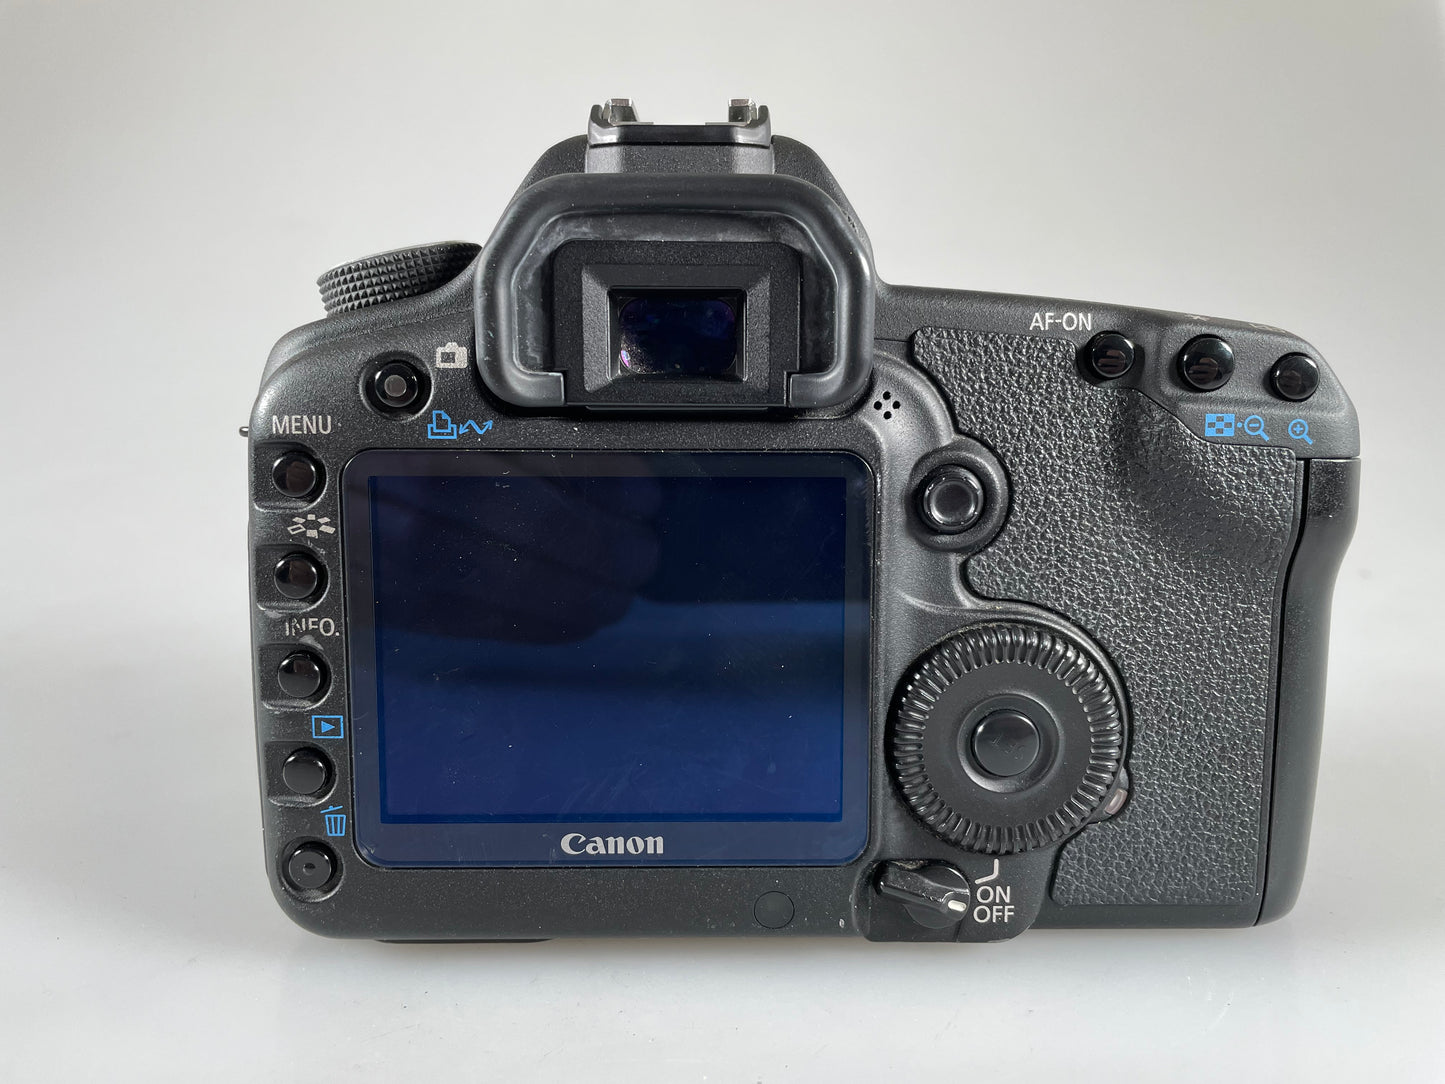 Canon EOS 5D Mark II 21.1MP Full Frame Digital SLR Camera Black Body (SC 39k)